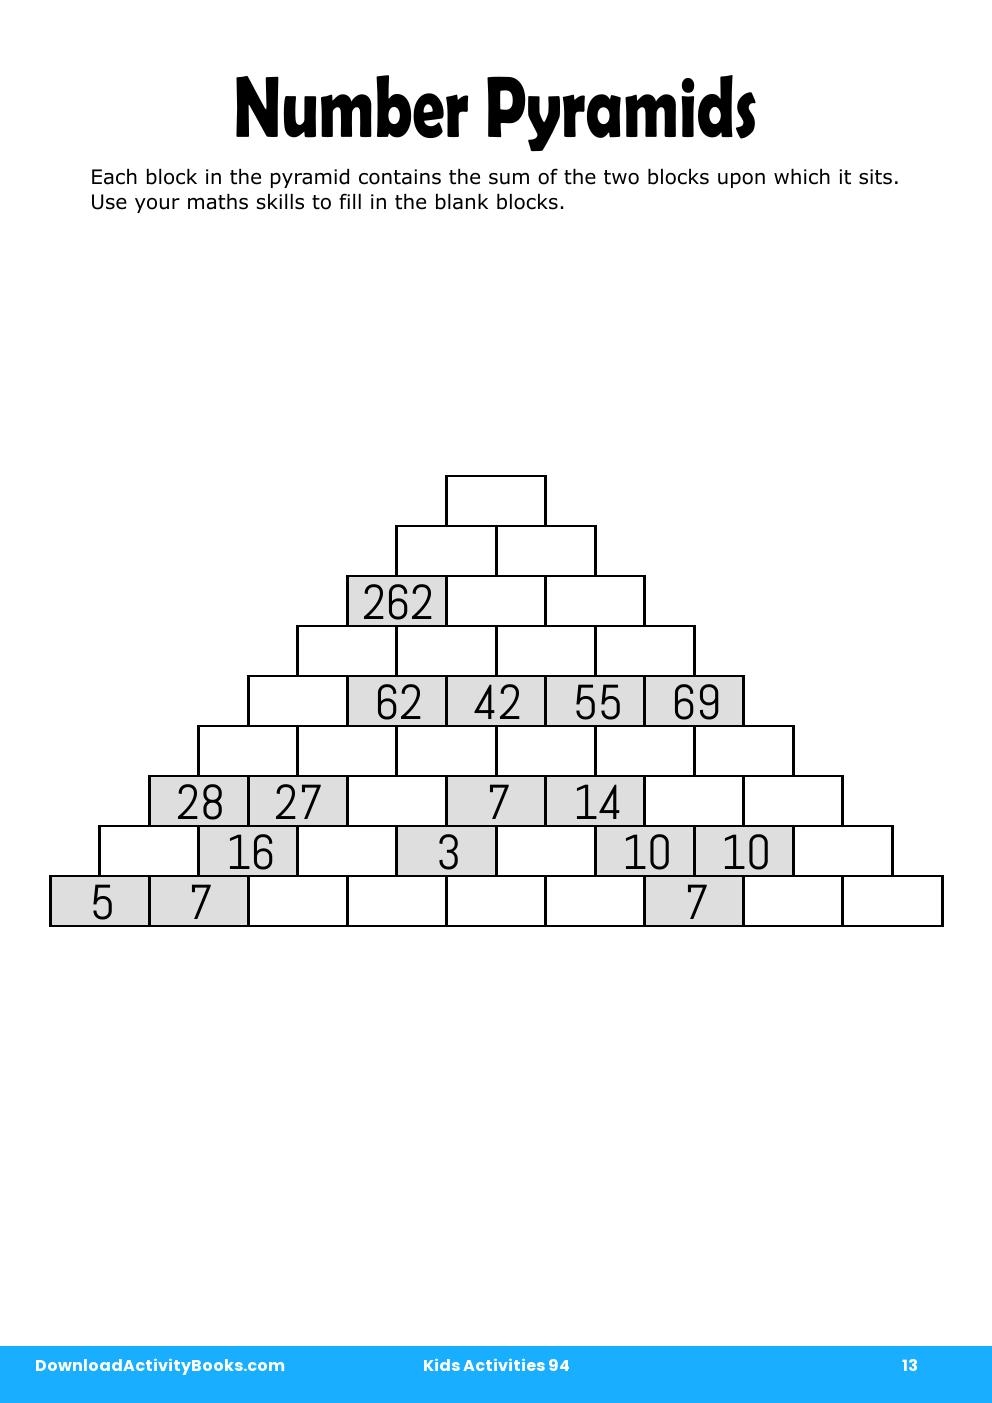 Number Pyramids in Kids Activities 94